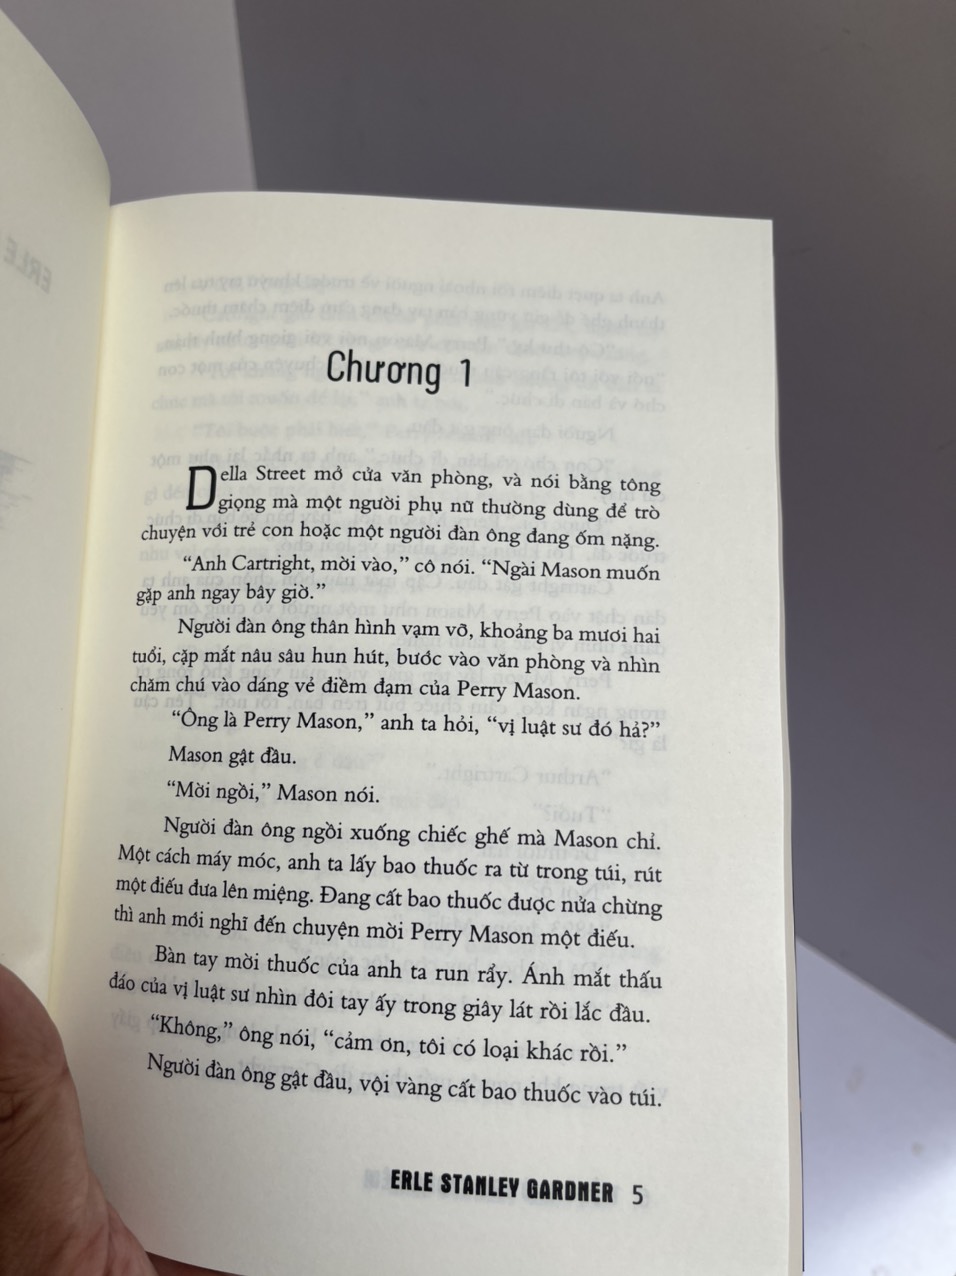 TIẾNG CHÓ TRU TRONG ĐÊM –  Erle Stanley Gardner – Phúc Minh Books